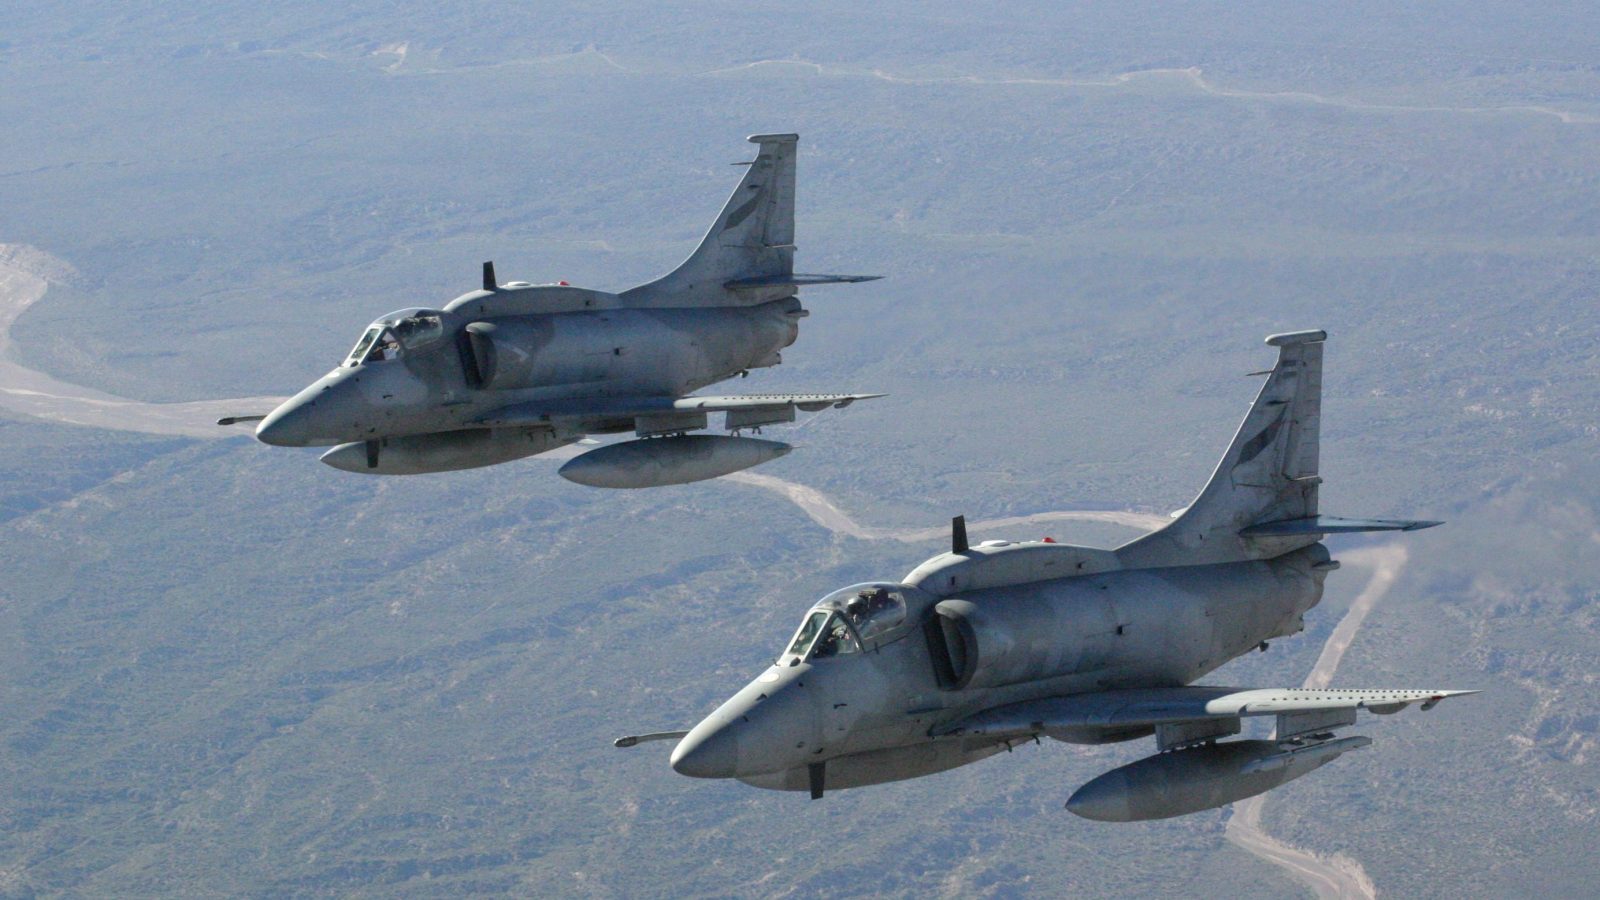 Analiza: Borbene komponente latinoameričkih vojnih vazduhoplovstava